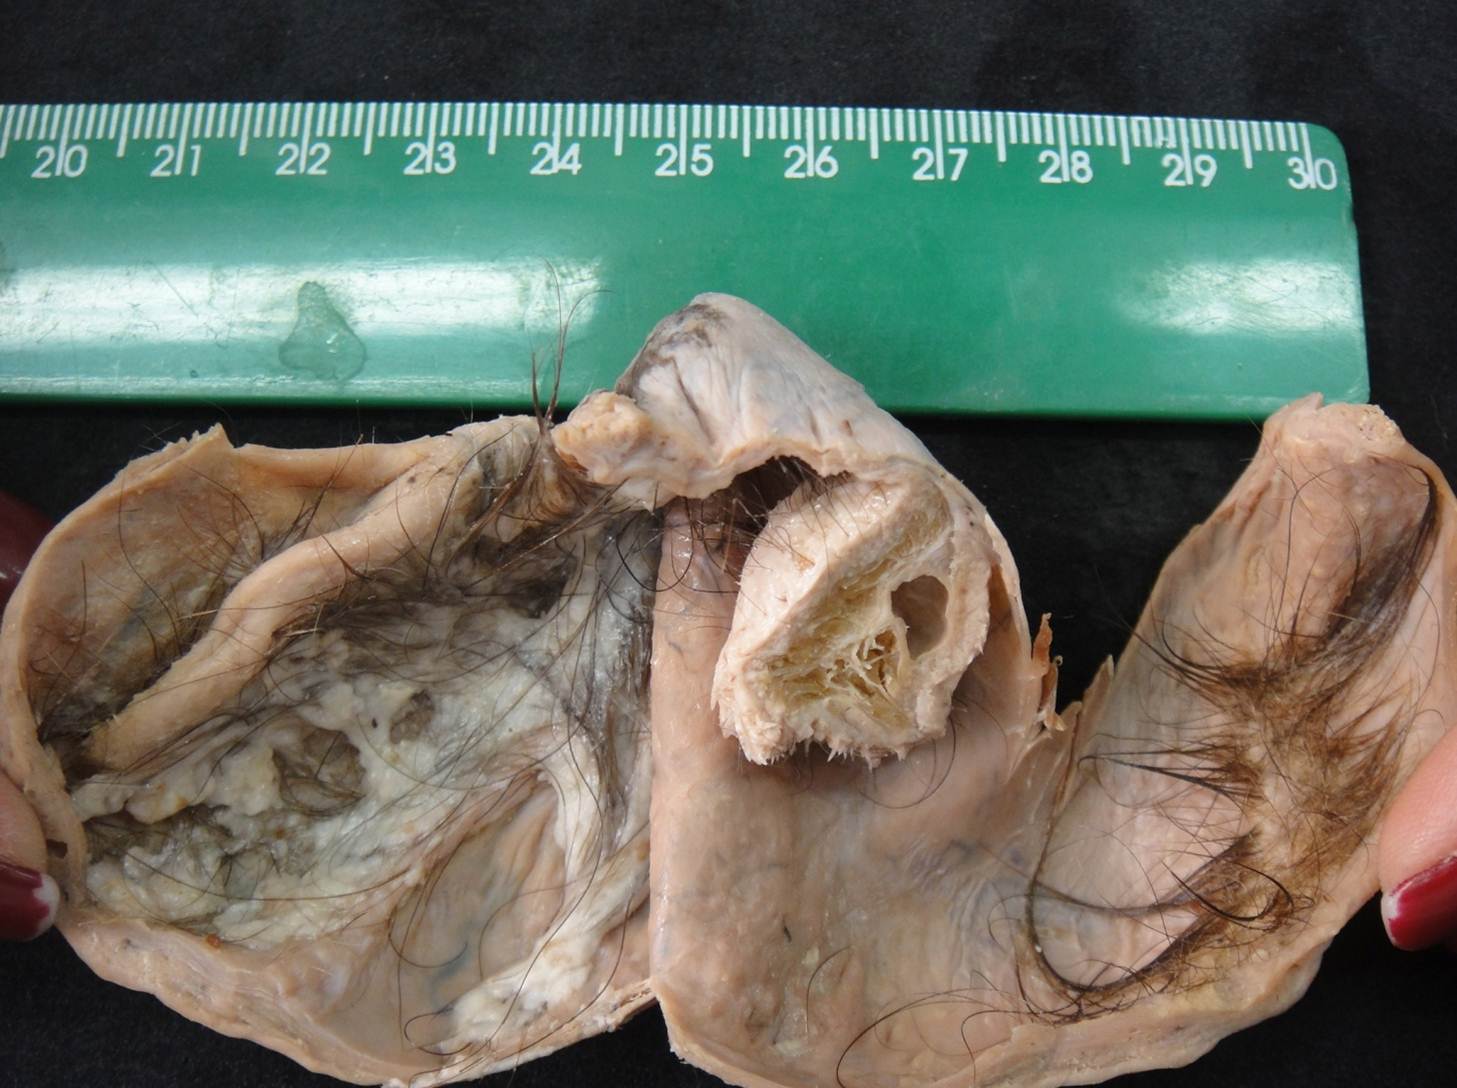 neoplasia benigna 15-teratoma cístico